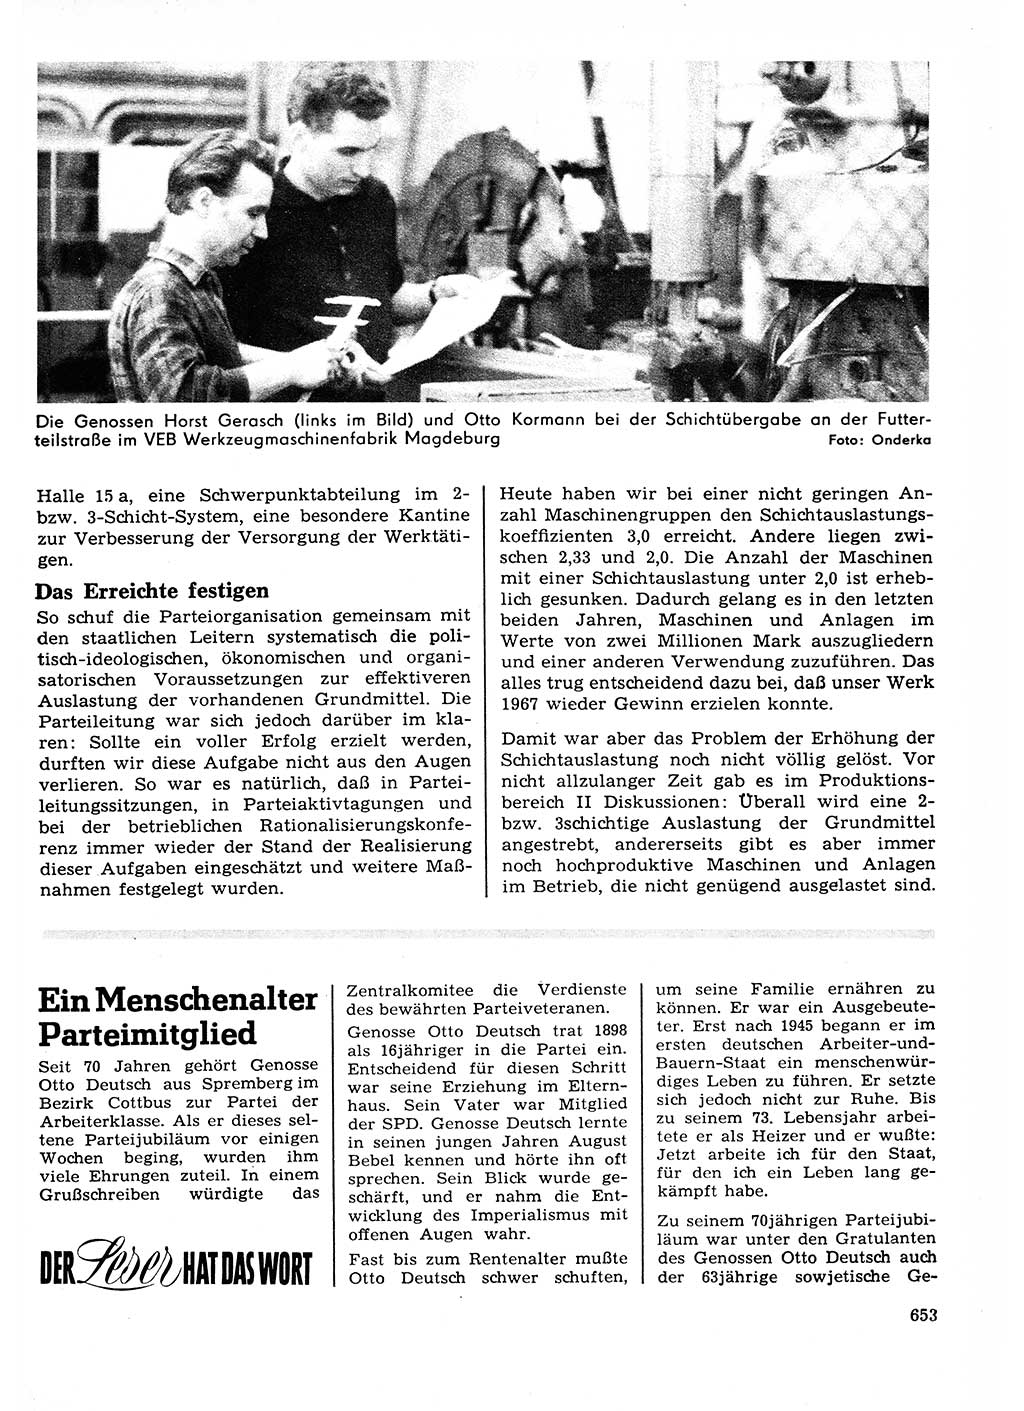 Neuer Weg (NW), Organ des Zentralkomitees (ZK) der SED (Sozialistische Einheitspartei Deutschlands) für Fragen des Parteilebens, 23. Jahrgang [Deutsche Demokratische Republik (DDR)] 1968, Seite 653 (NW ZK SED DDR 1968, S. 653)